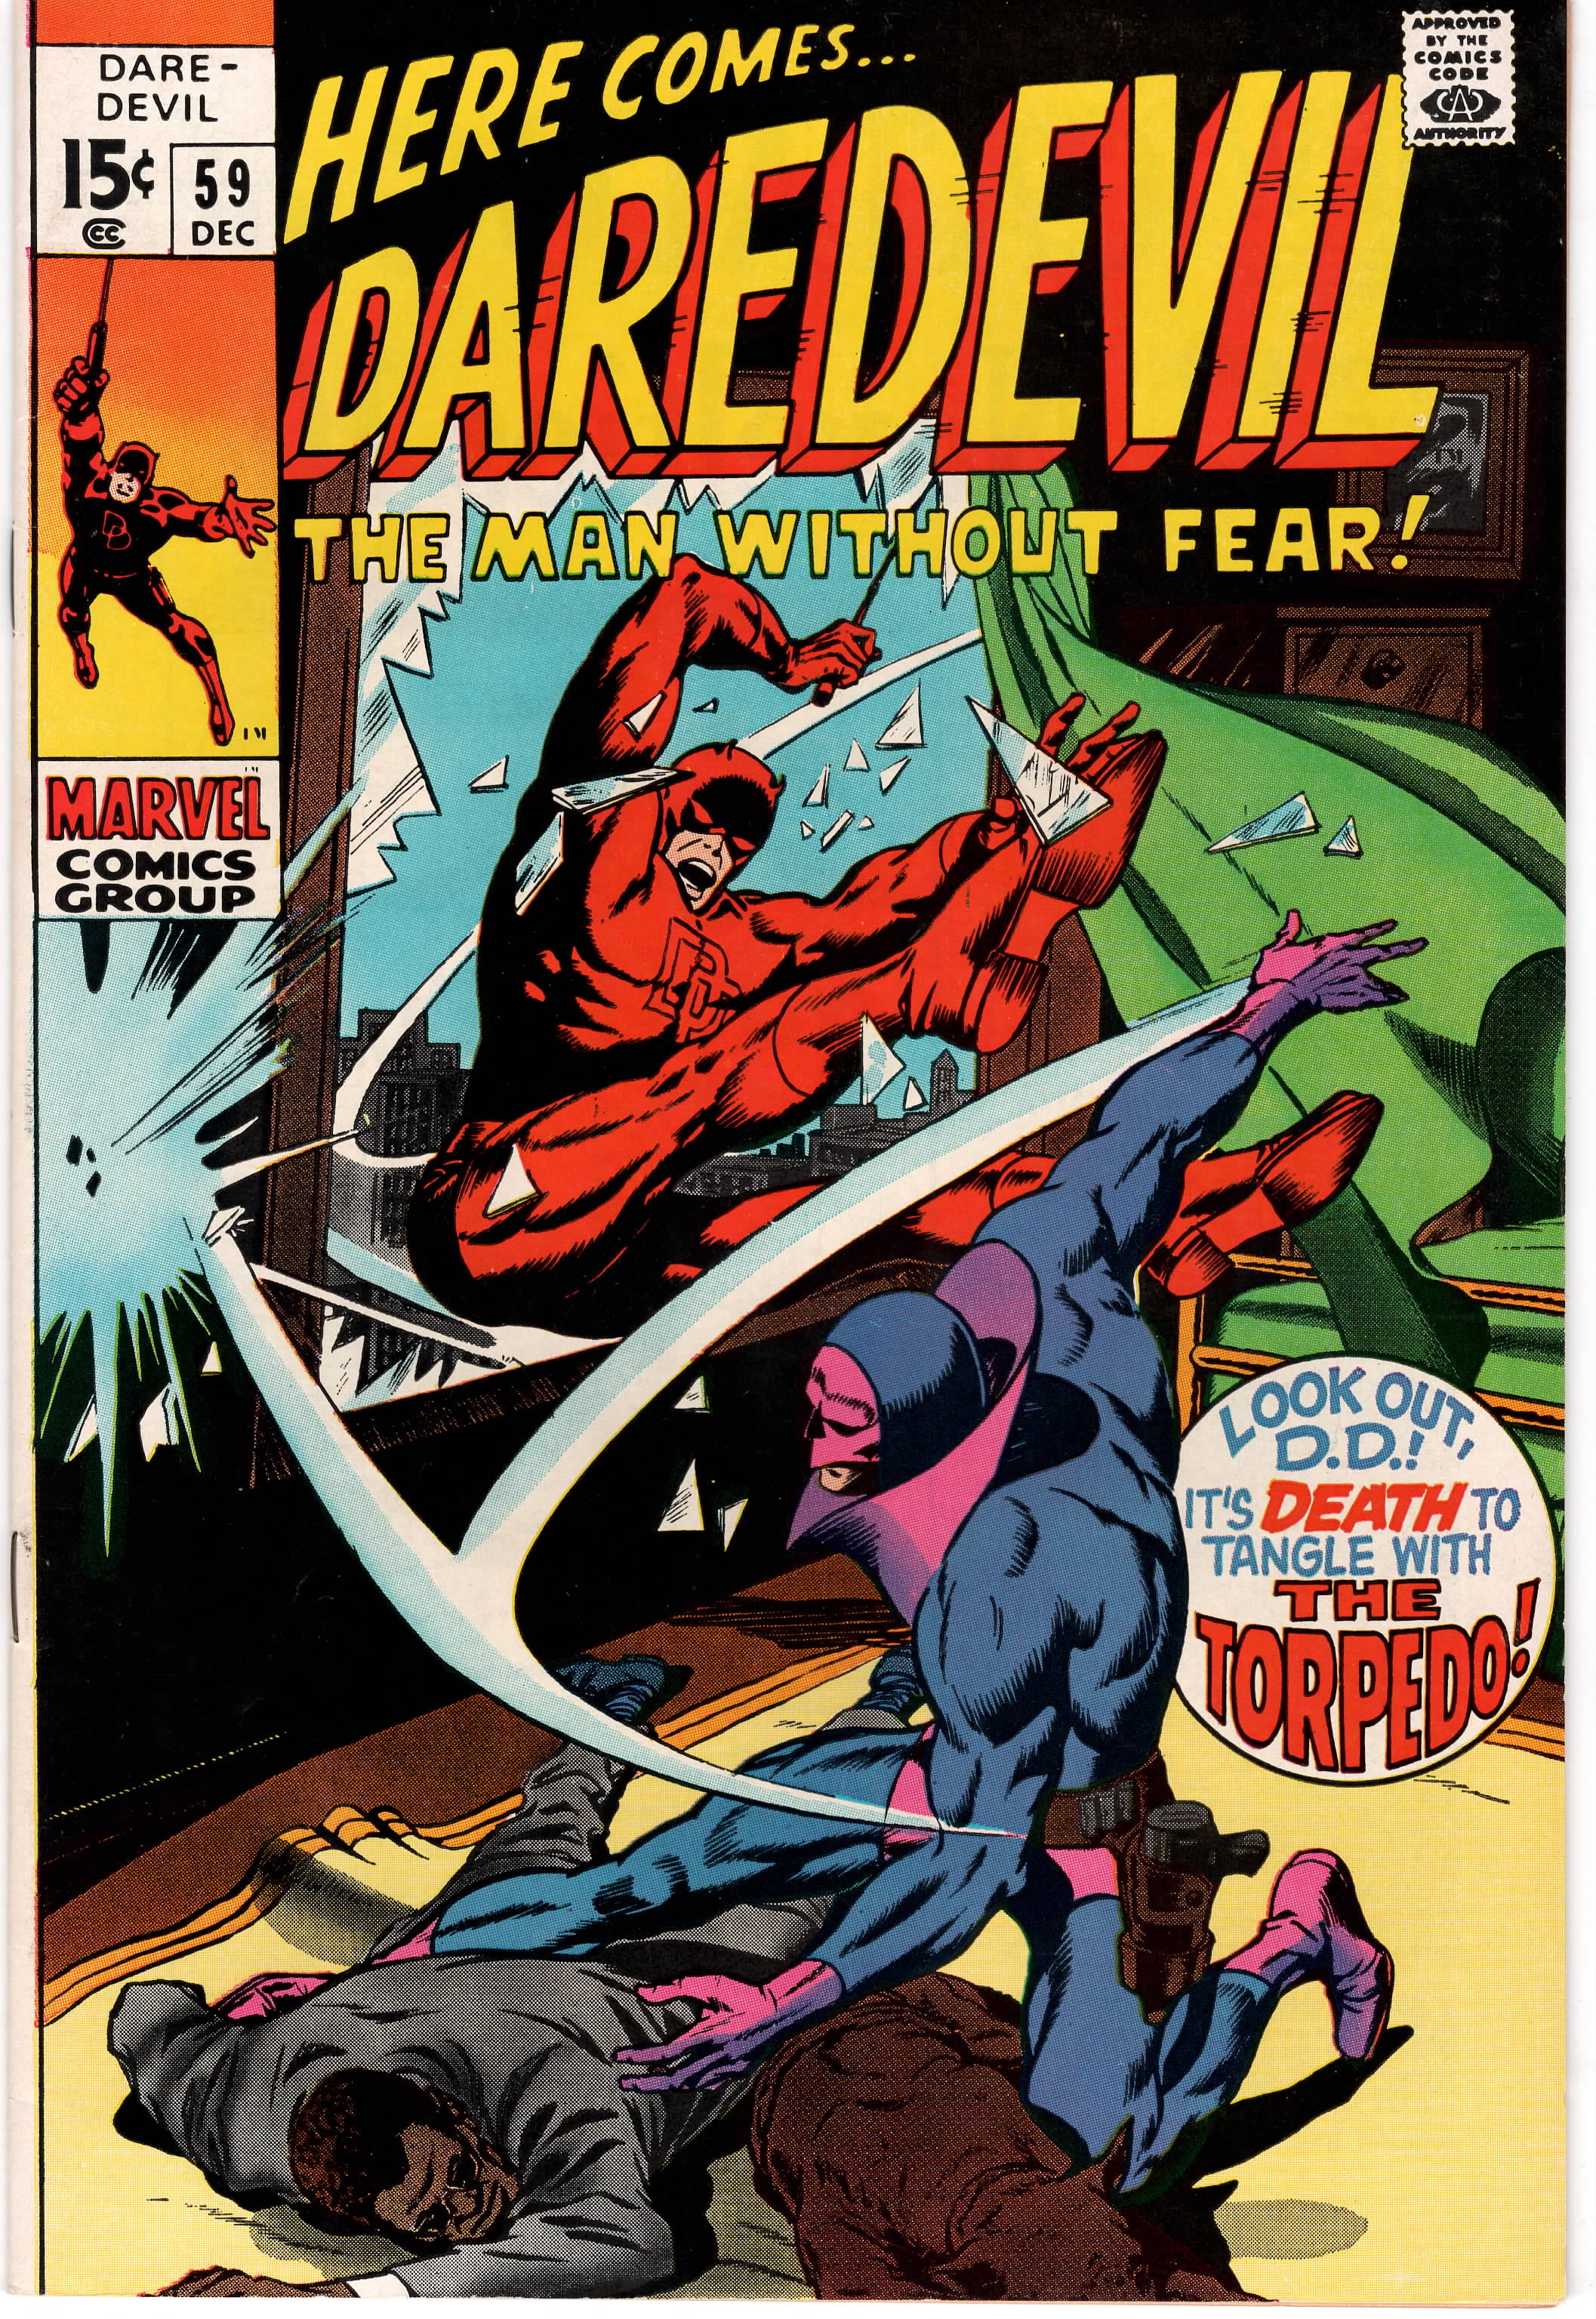 Daredevil #059